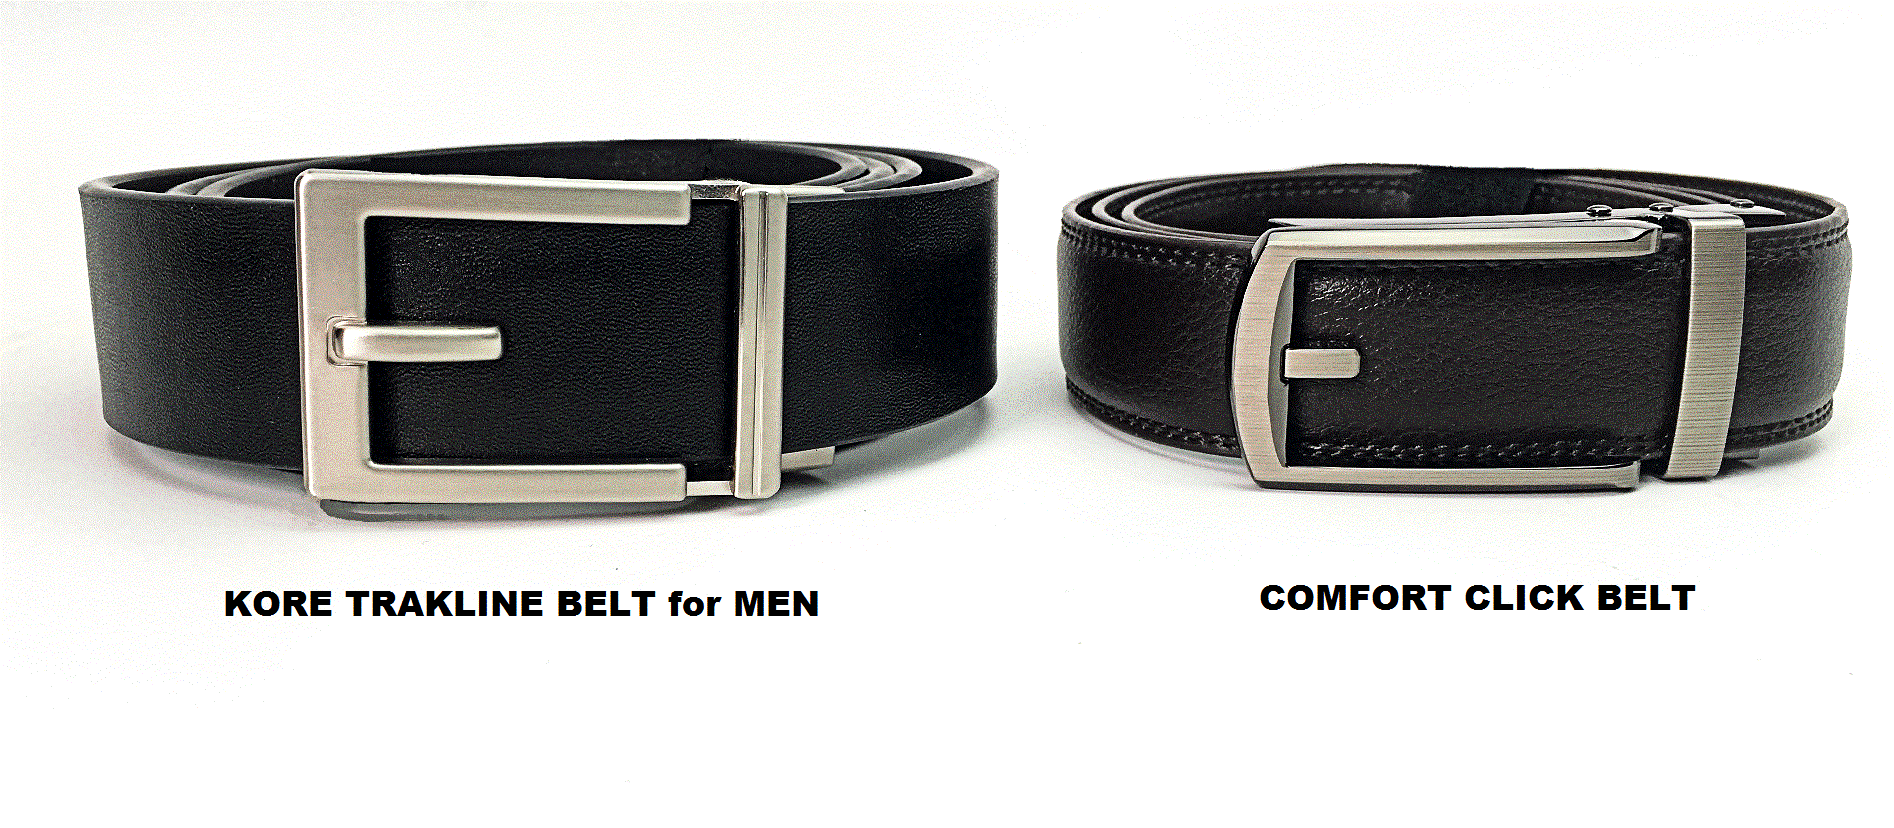 Comfort Click Belt "As Seen on TV" versus Kore Trakline Belts